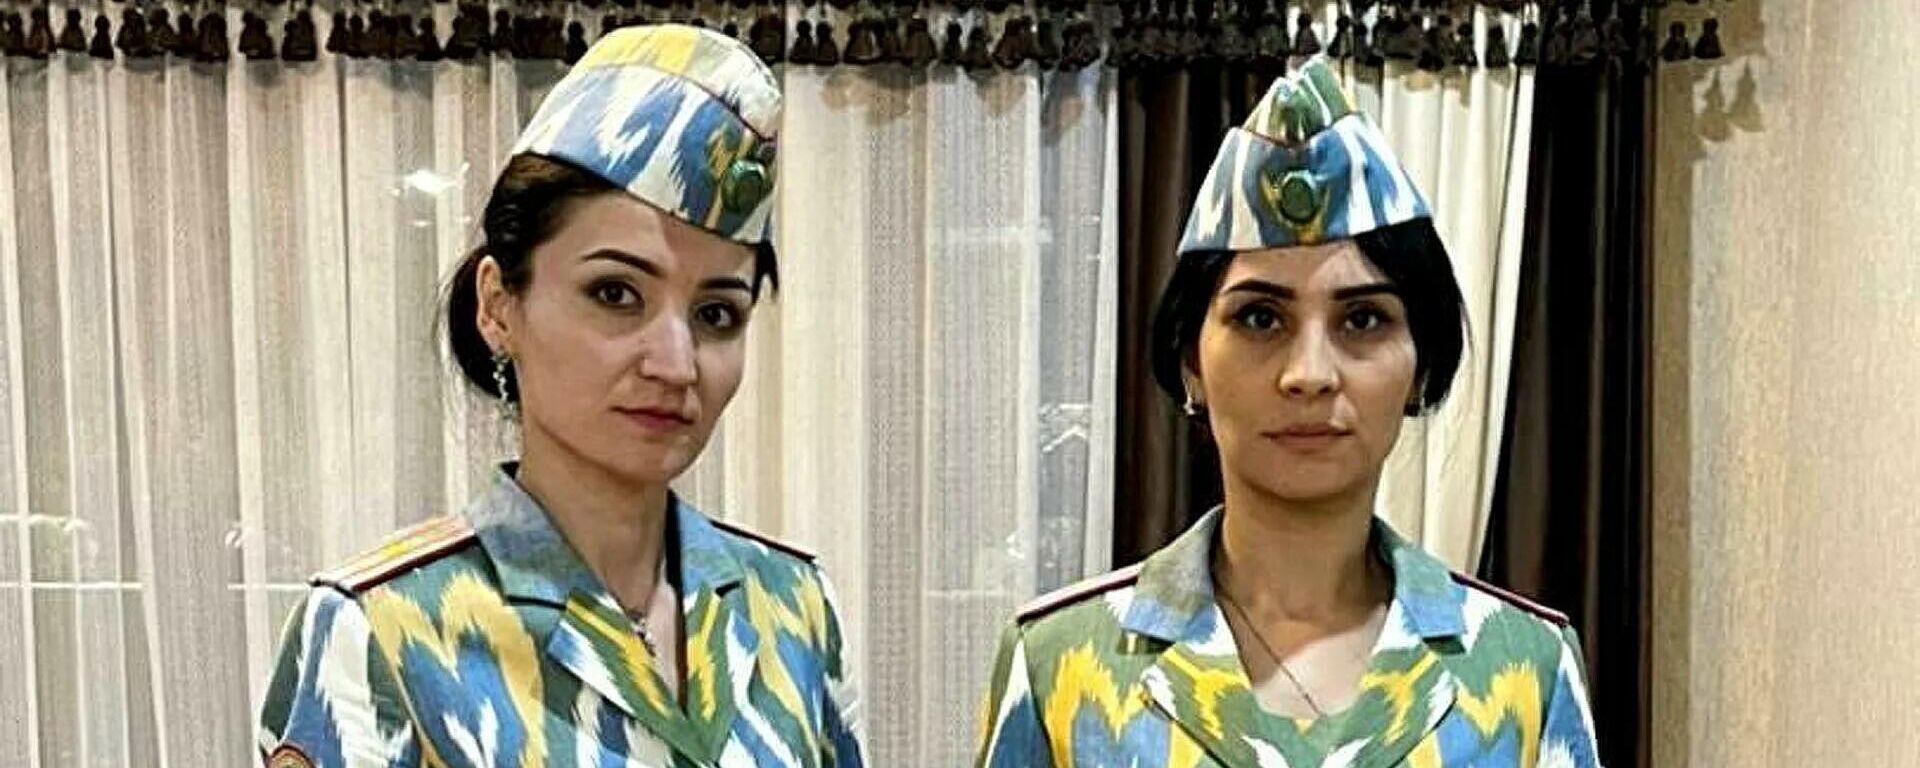 В Таджикистане представлена новая парадная и полевая форма для женщин-милиционеров - Sputnik Ўзбекистон, 1920, 12.04.2021